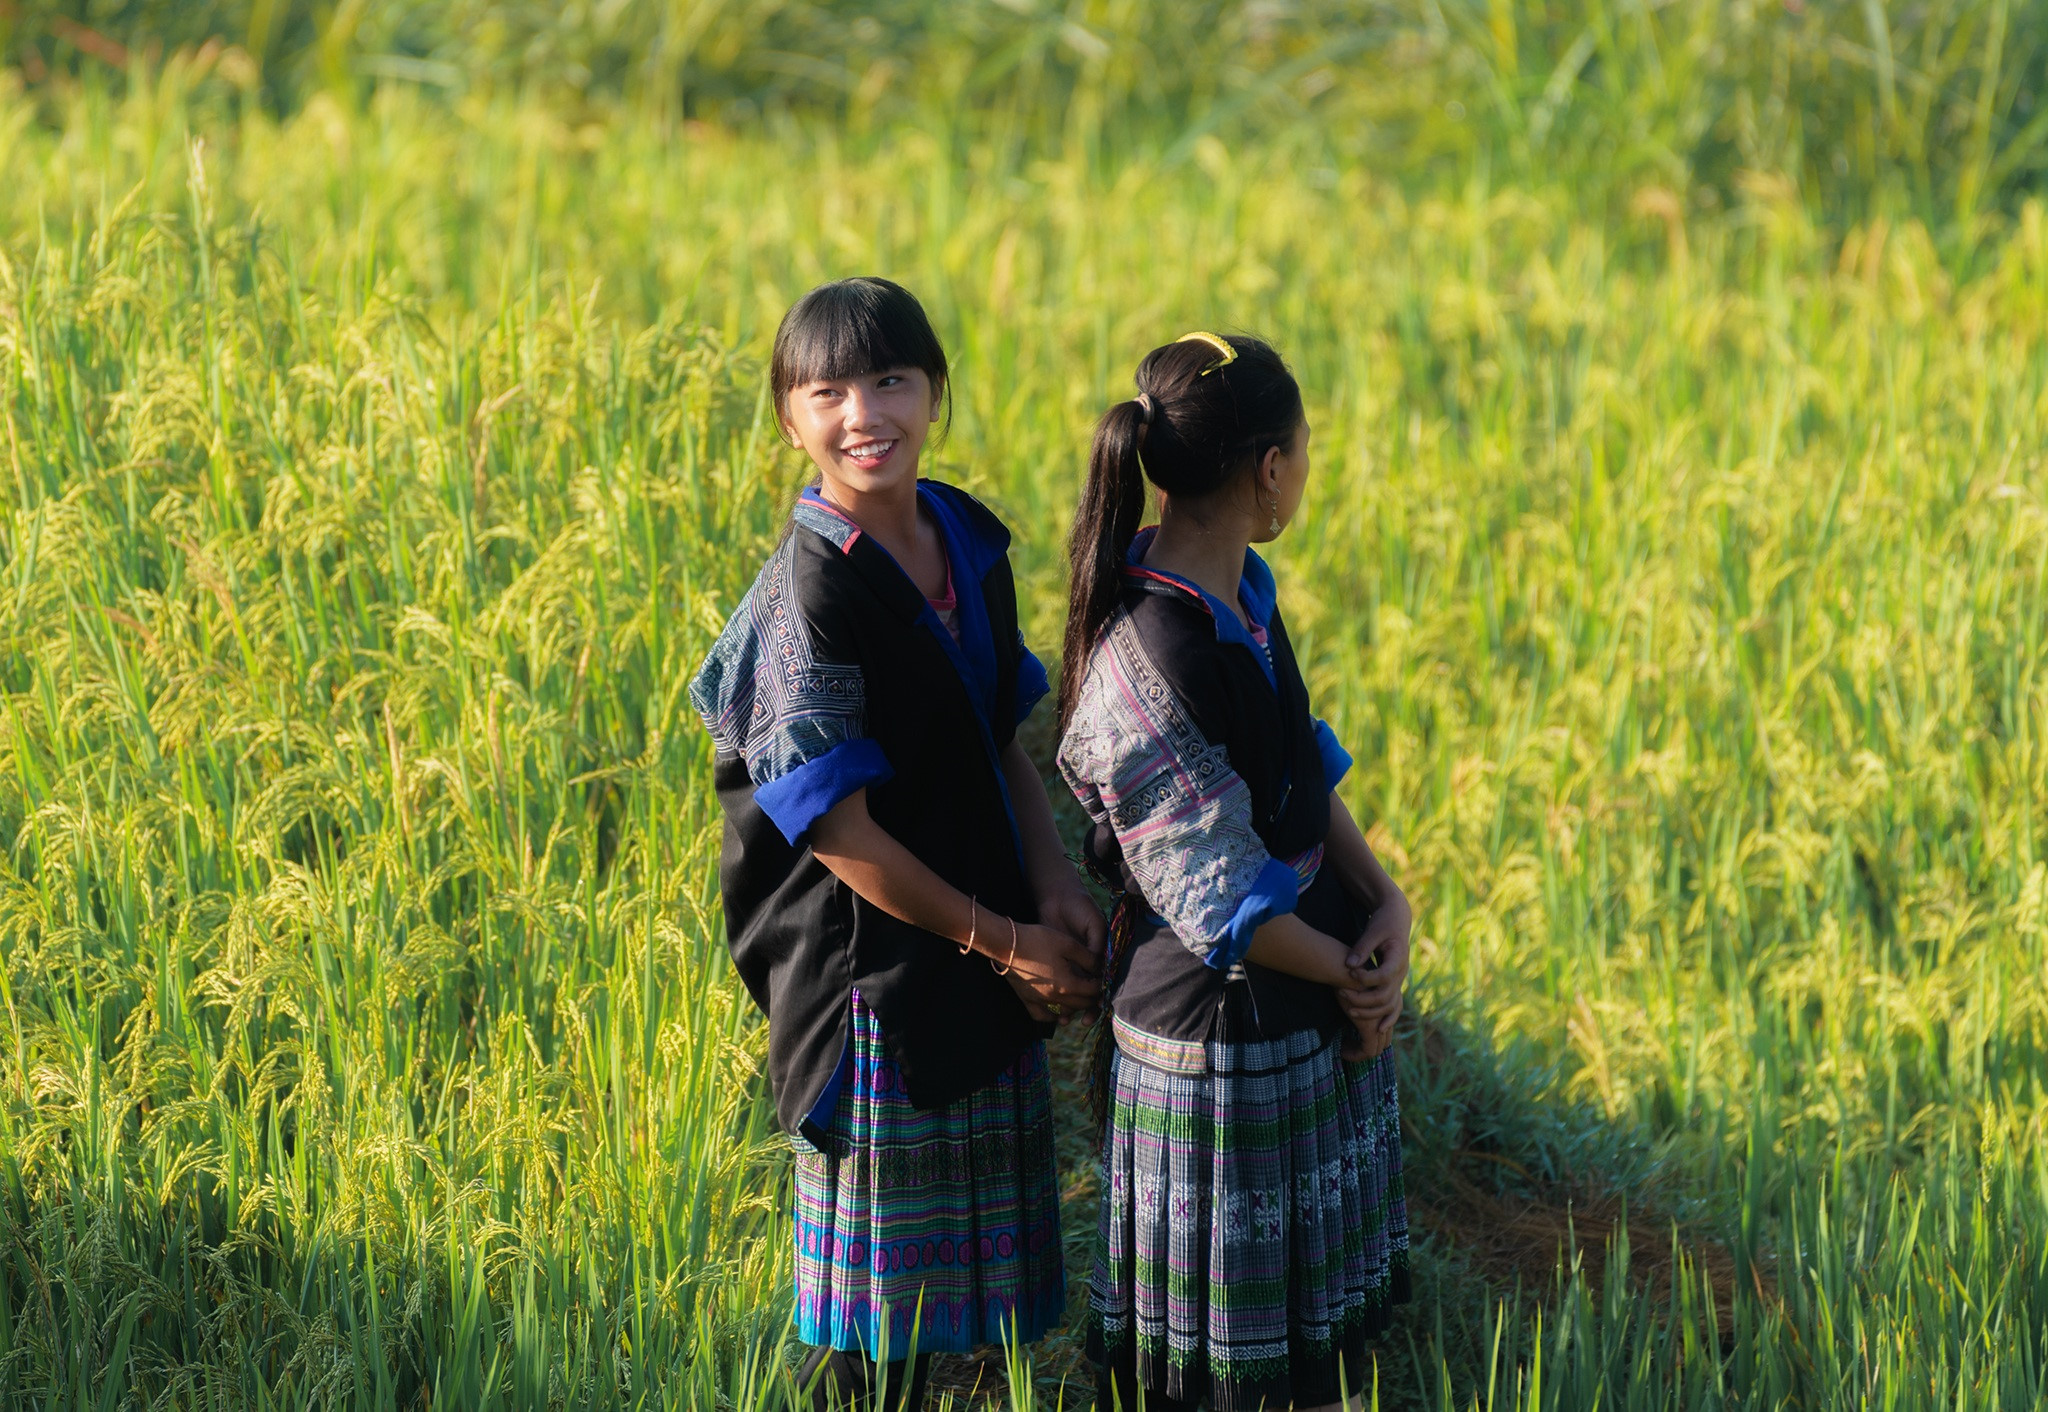 Những cô gái vùng cao trong trang phục dân tộc với nét mặt rạng ngời, tự hào về vẻ đẹp thiên nhiên quê hương.